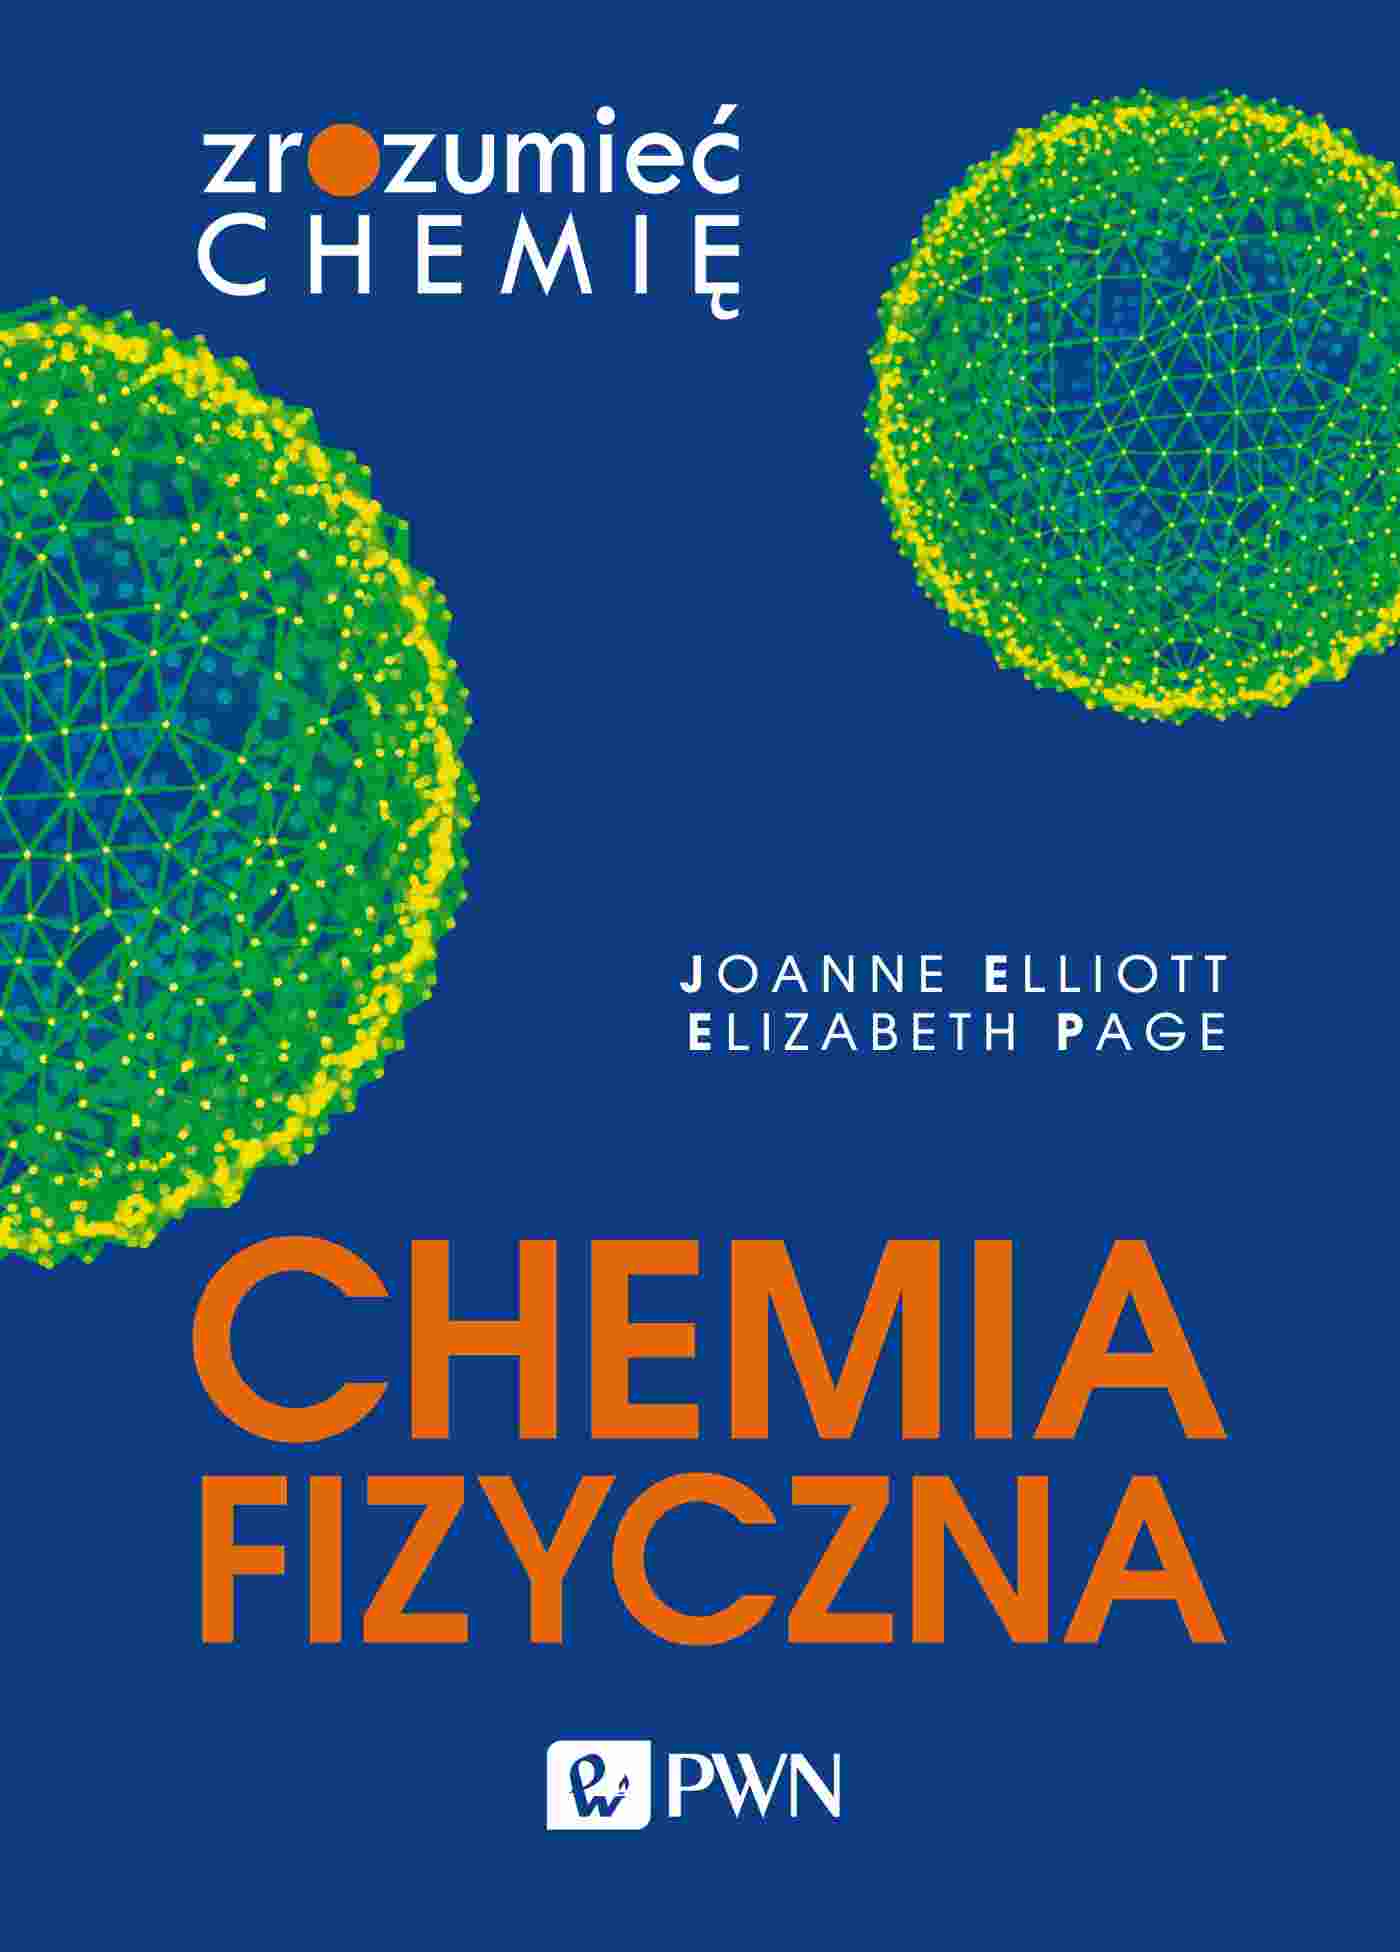 Kniha Chemia fizyczna. Zrozumieć chemię Joanne Elliott